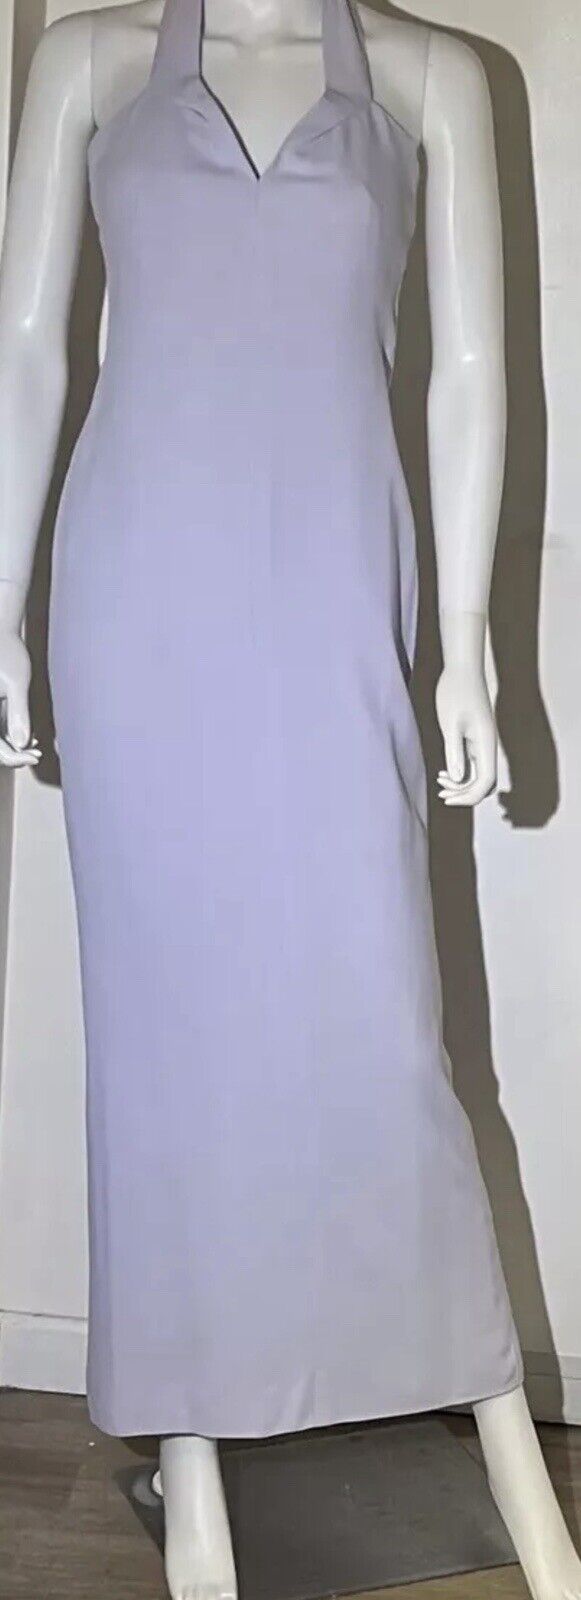 GIANNI VERSACE Sz 4 Women’s Long Pale Lavender Vintage Dress A Few Light Stains